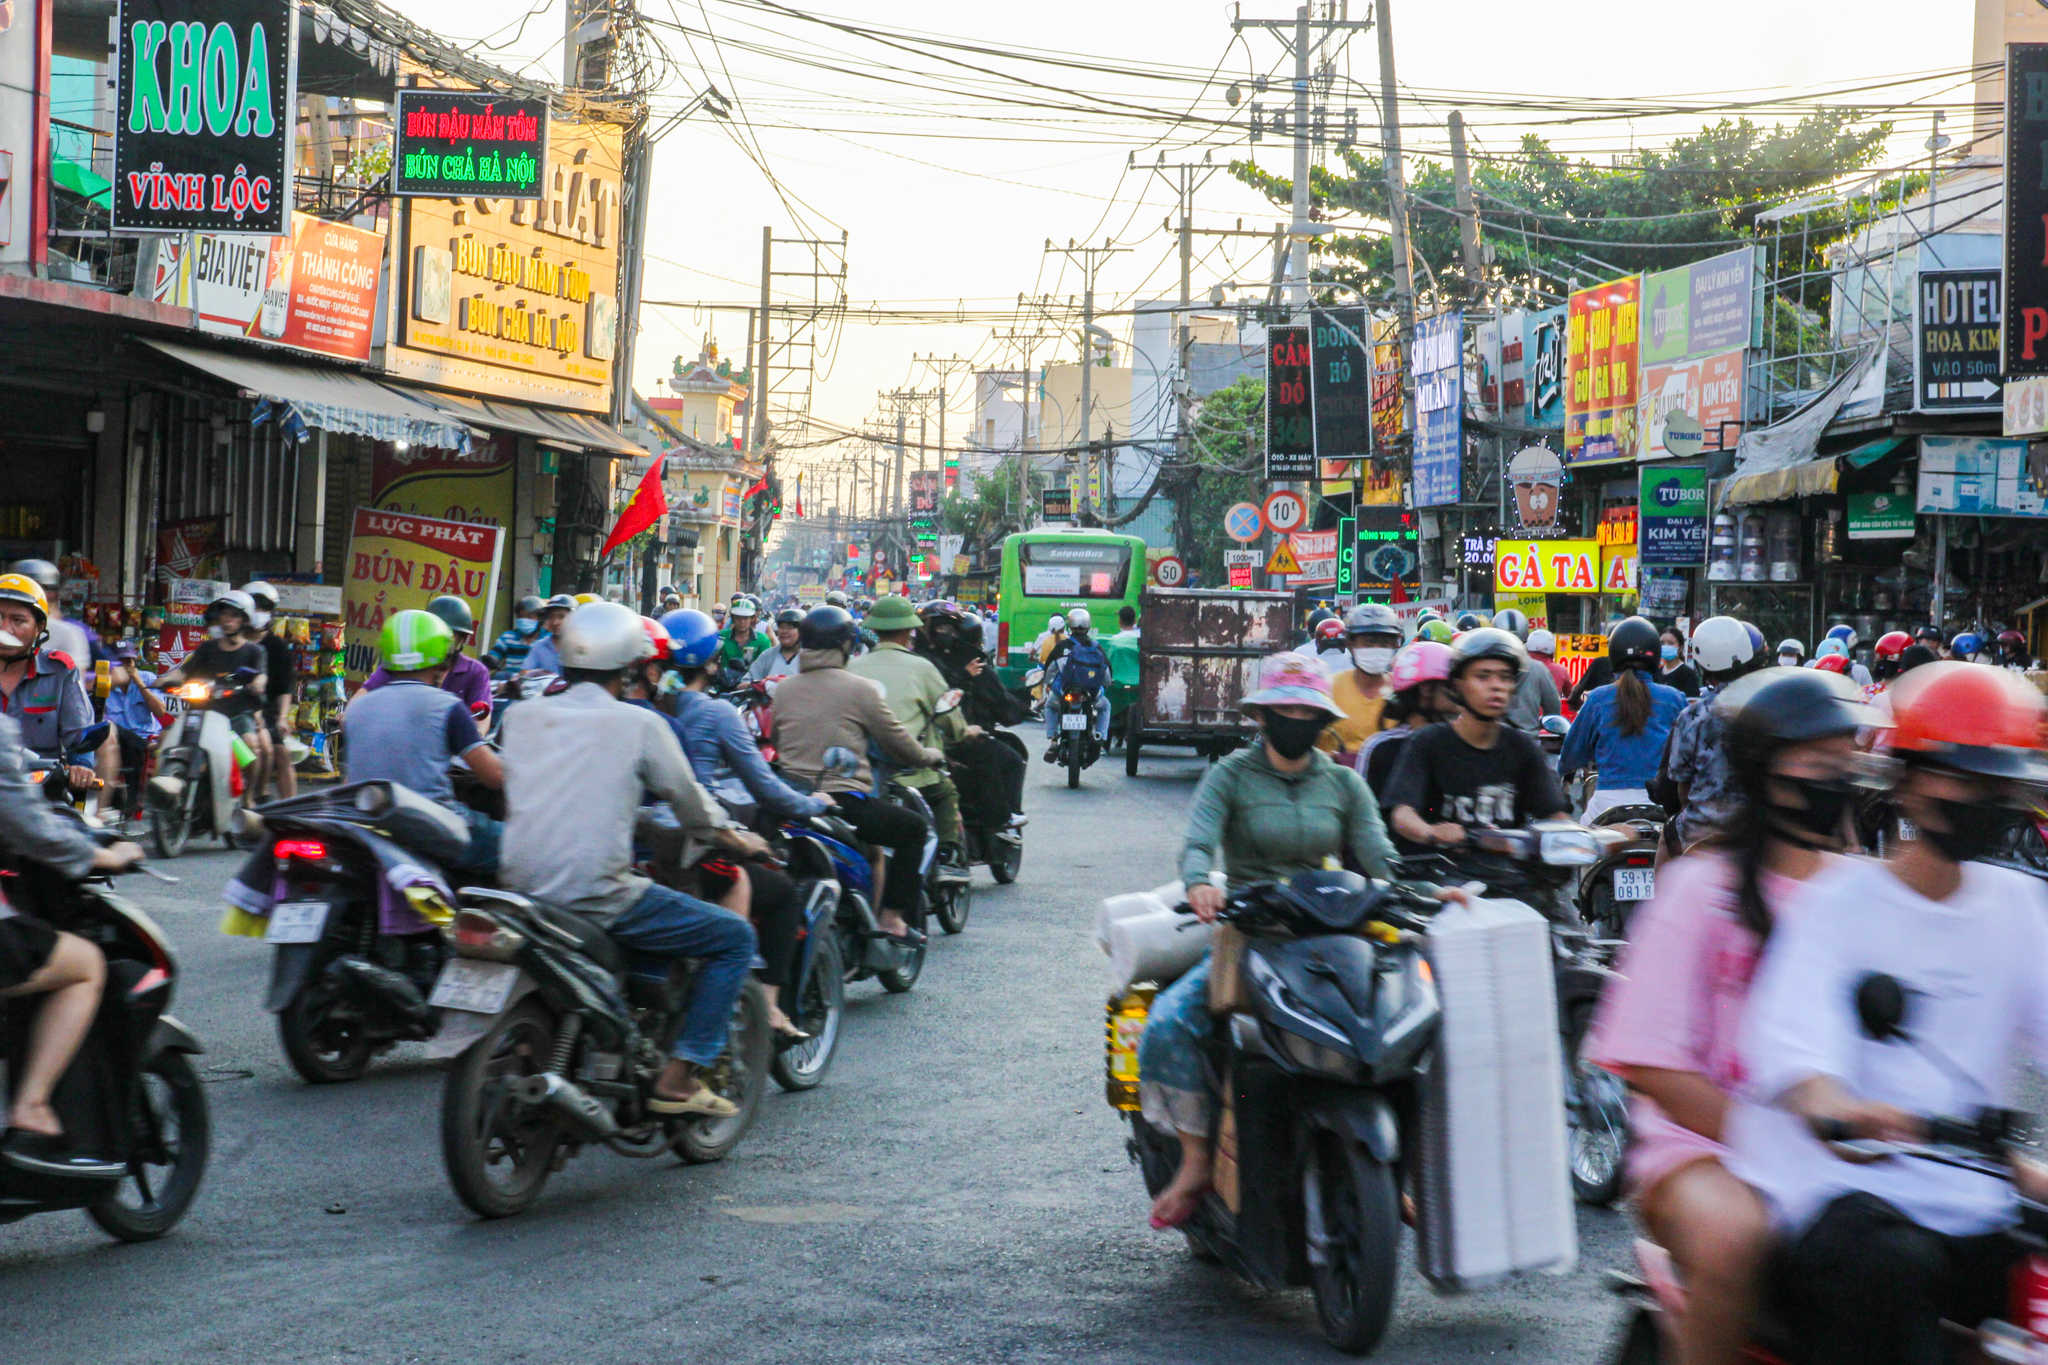 Con đường huyết mạch ở huyện đông dân nhất Việt Nam có thể được đầu tư 5.200 tỷ để mở rộng- Ảnh 8.